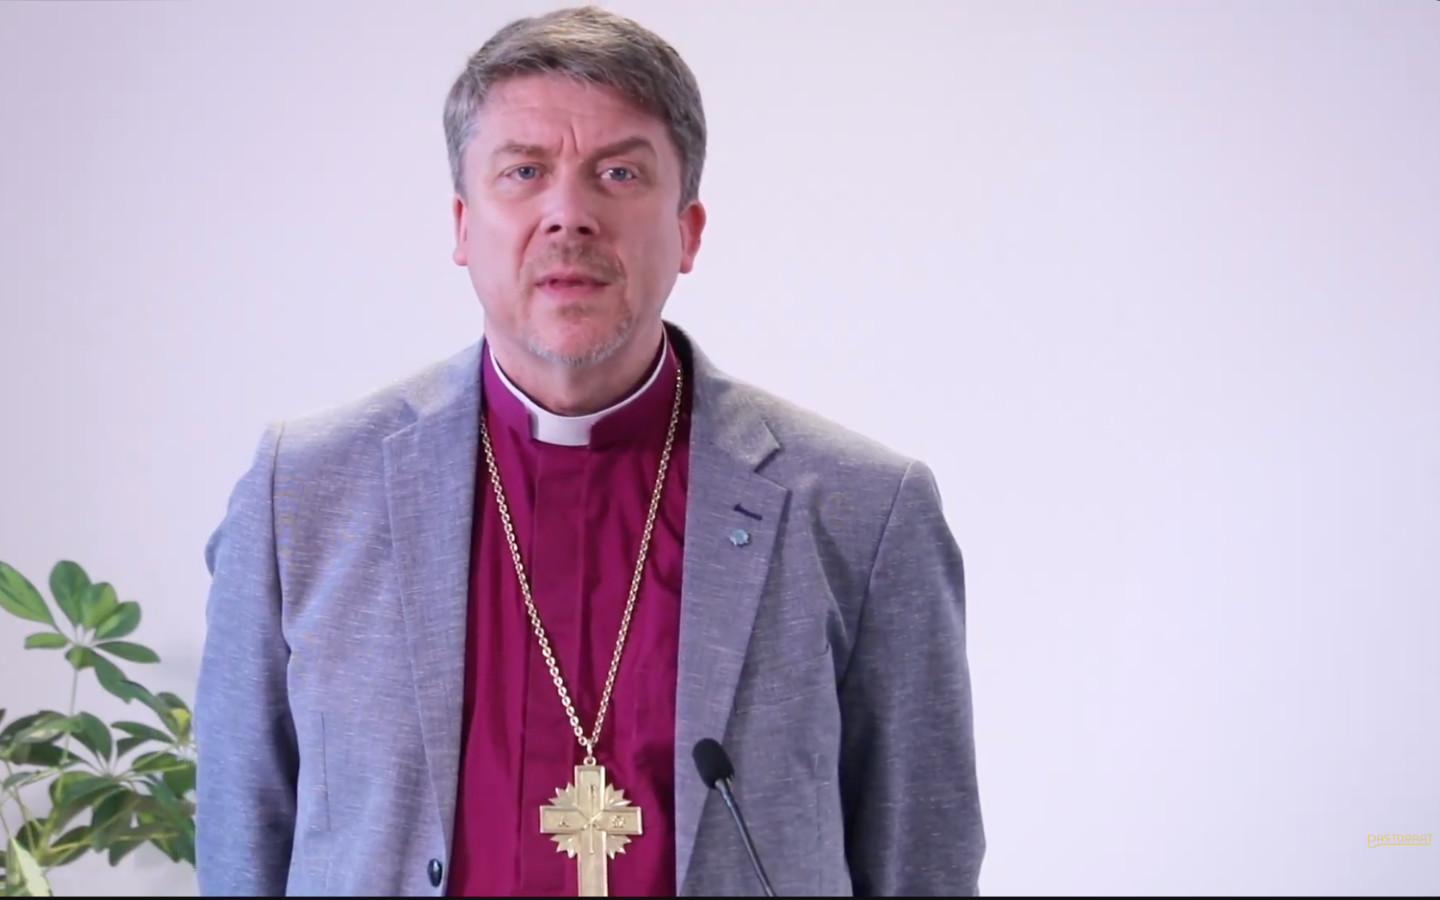 Peapiiskop Urmas Viilma palub Riigikogu juhatusel arvestada Juliuse kalendri järgi teenivate õigeusklike usuliste tunnetega